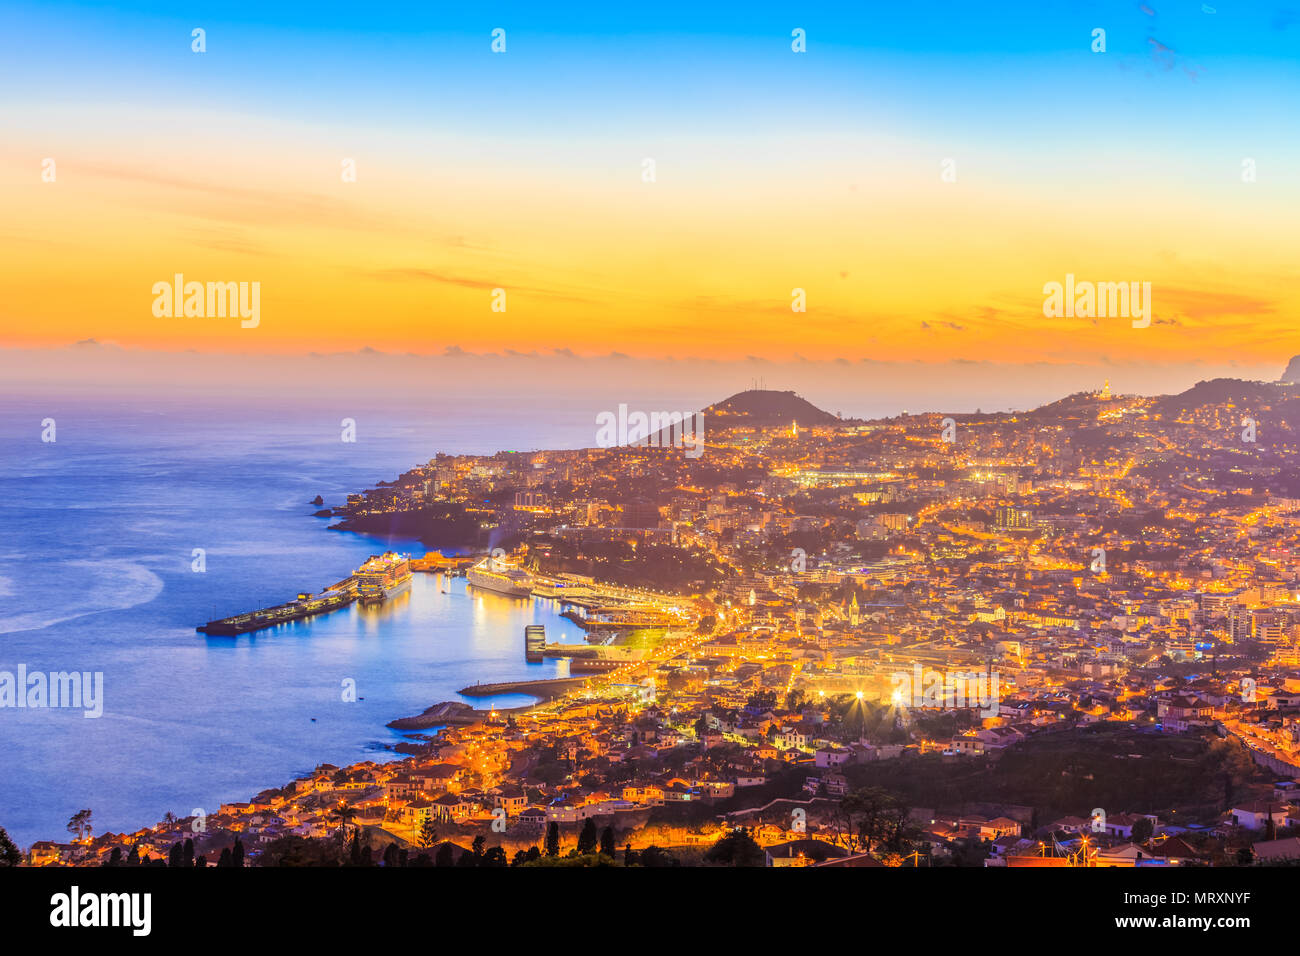 Scène nocturne avec le paysage urbain de la capitale Funchal, île de Madère, Portugal Banque D'Images